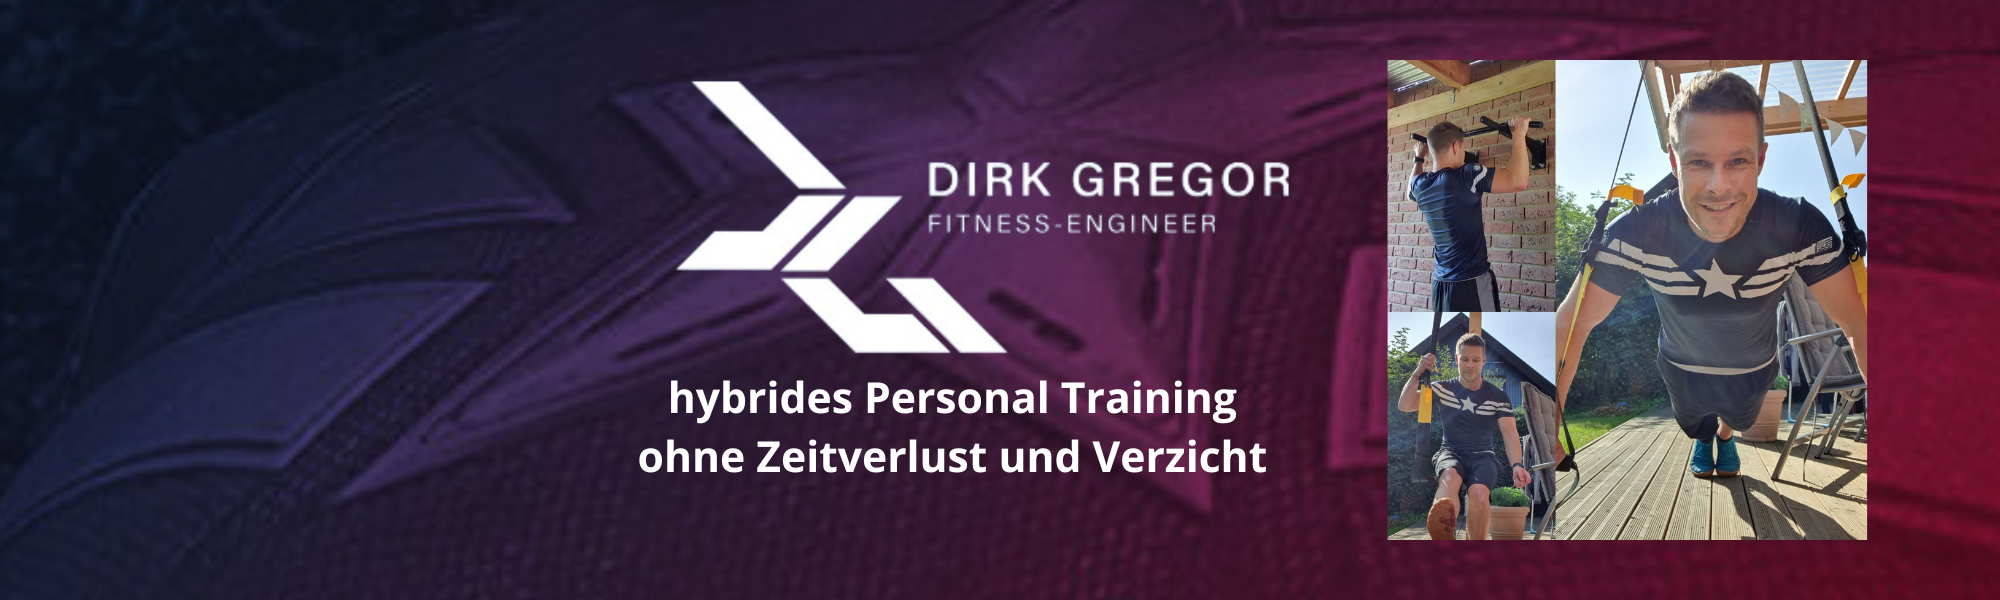 Dirk Gregor - Fitness Engineering